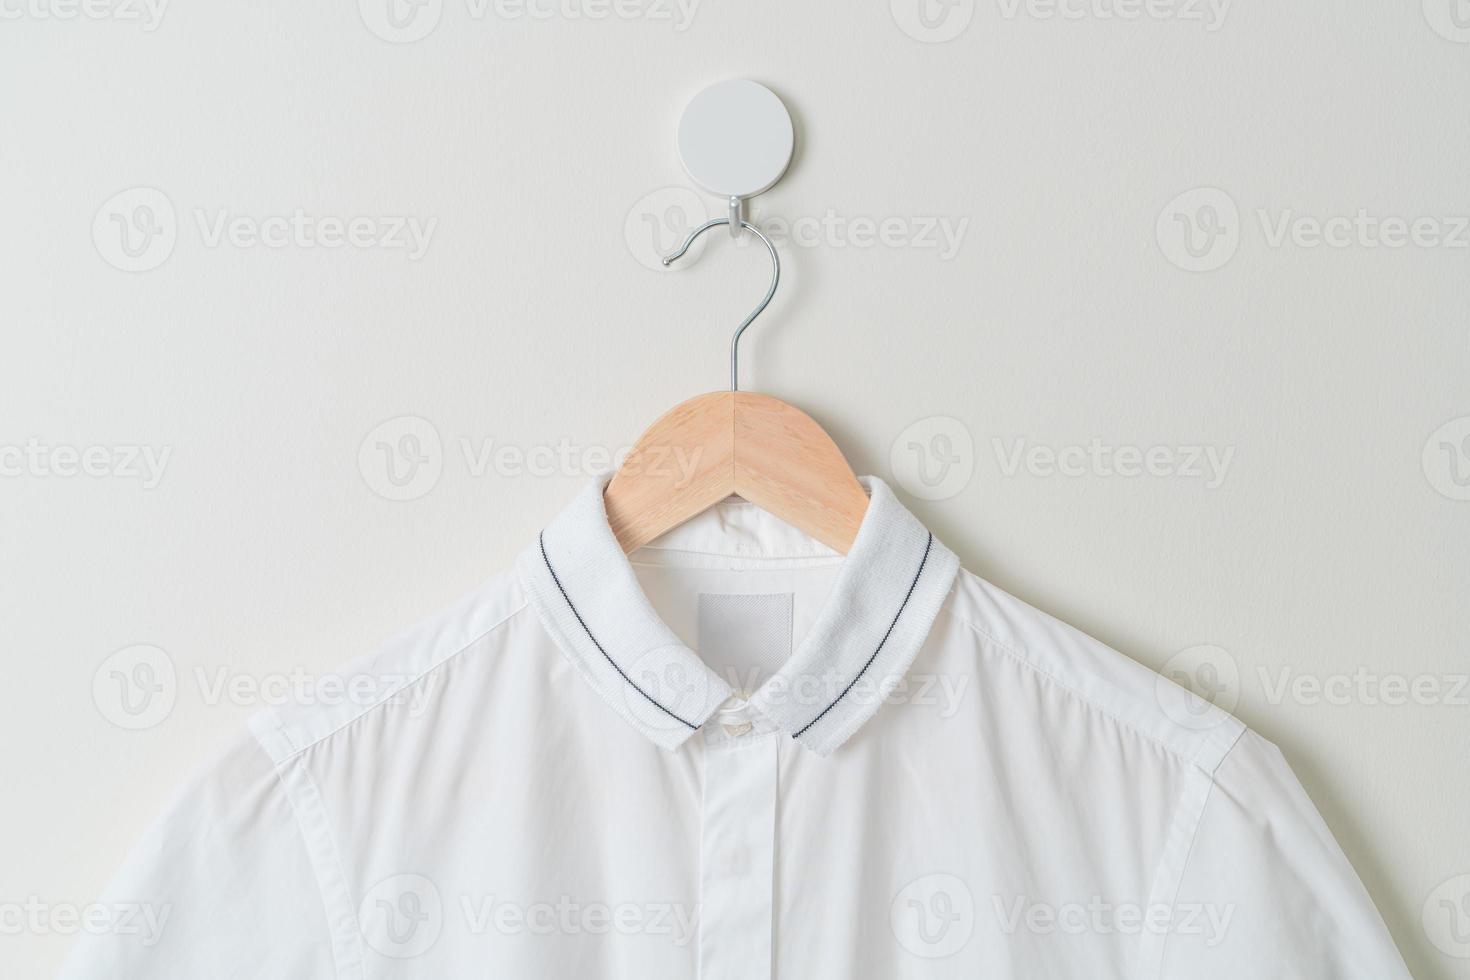 chemise suspendue avec cintre en bois au mur photo